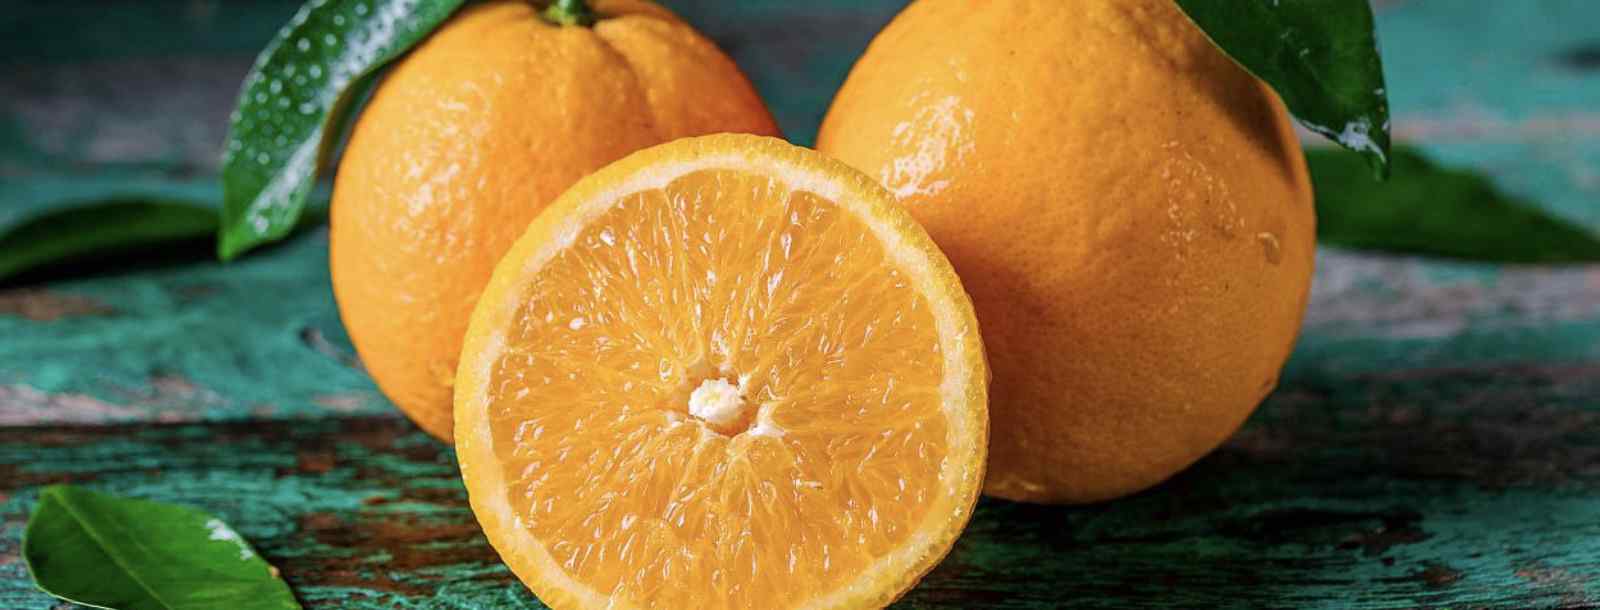 一个橙子含多少维生素c